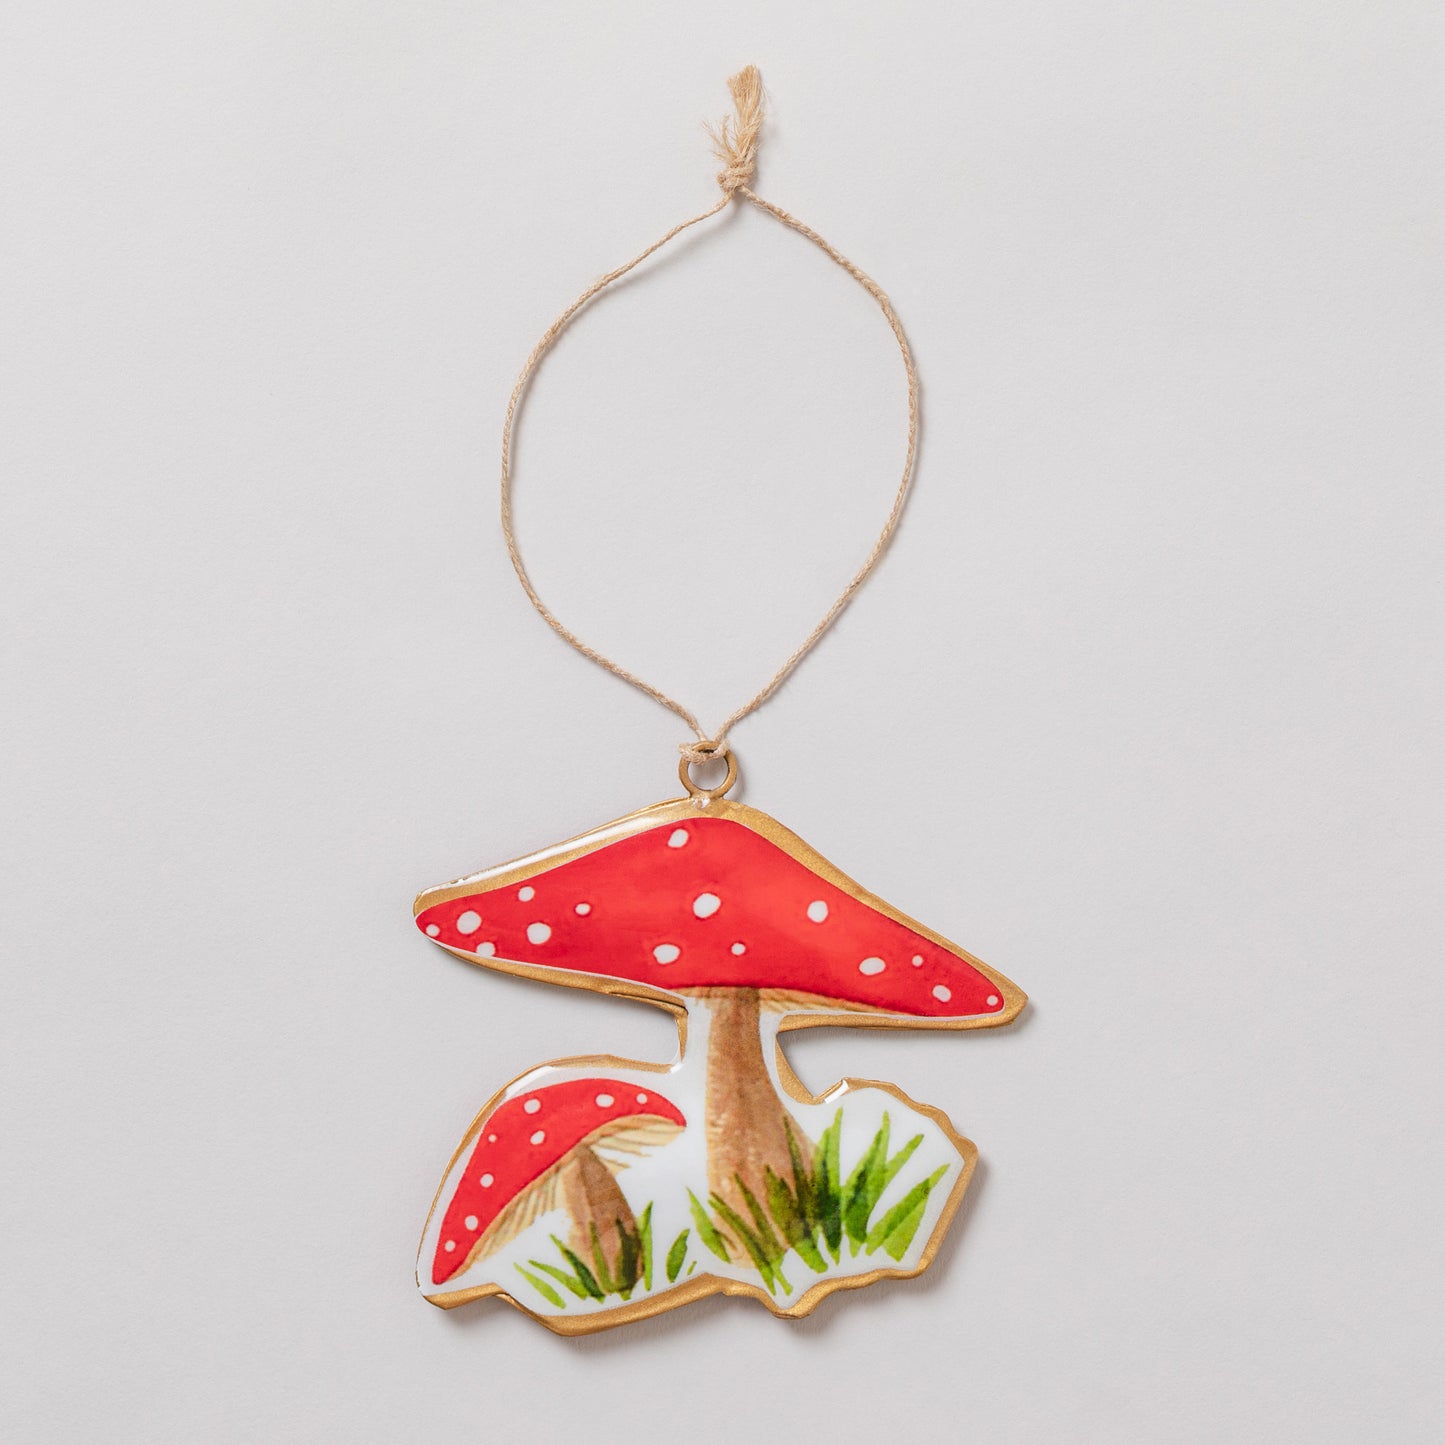 Love for Mushrooms Metal Ornament